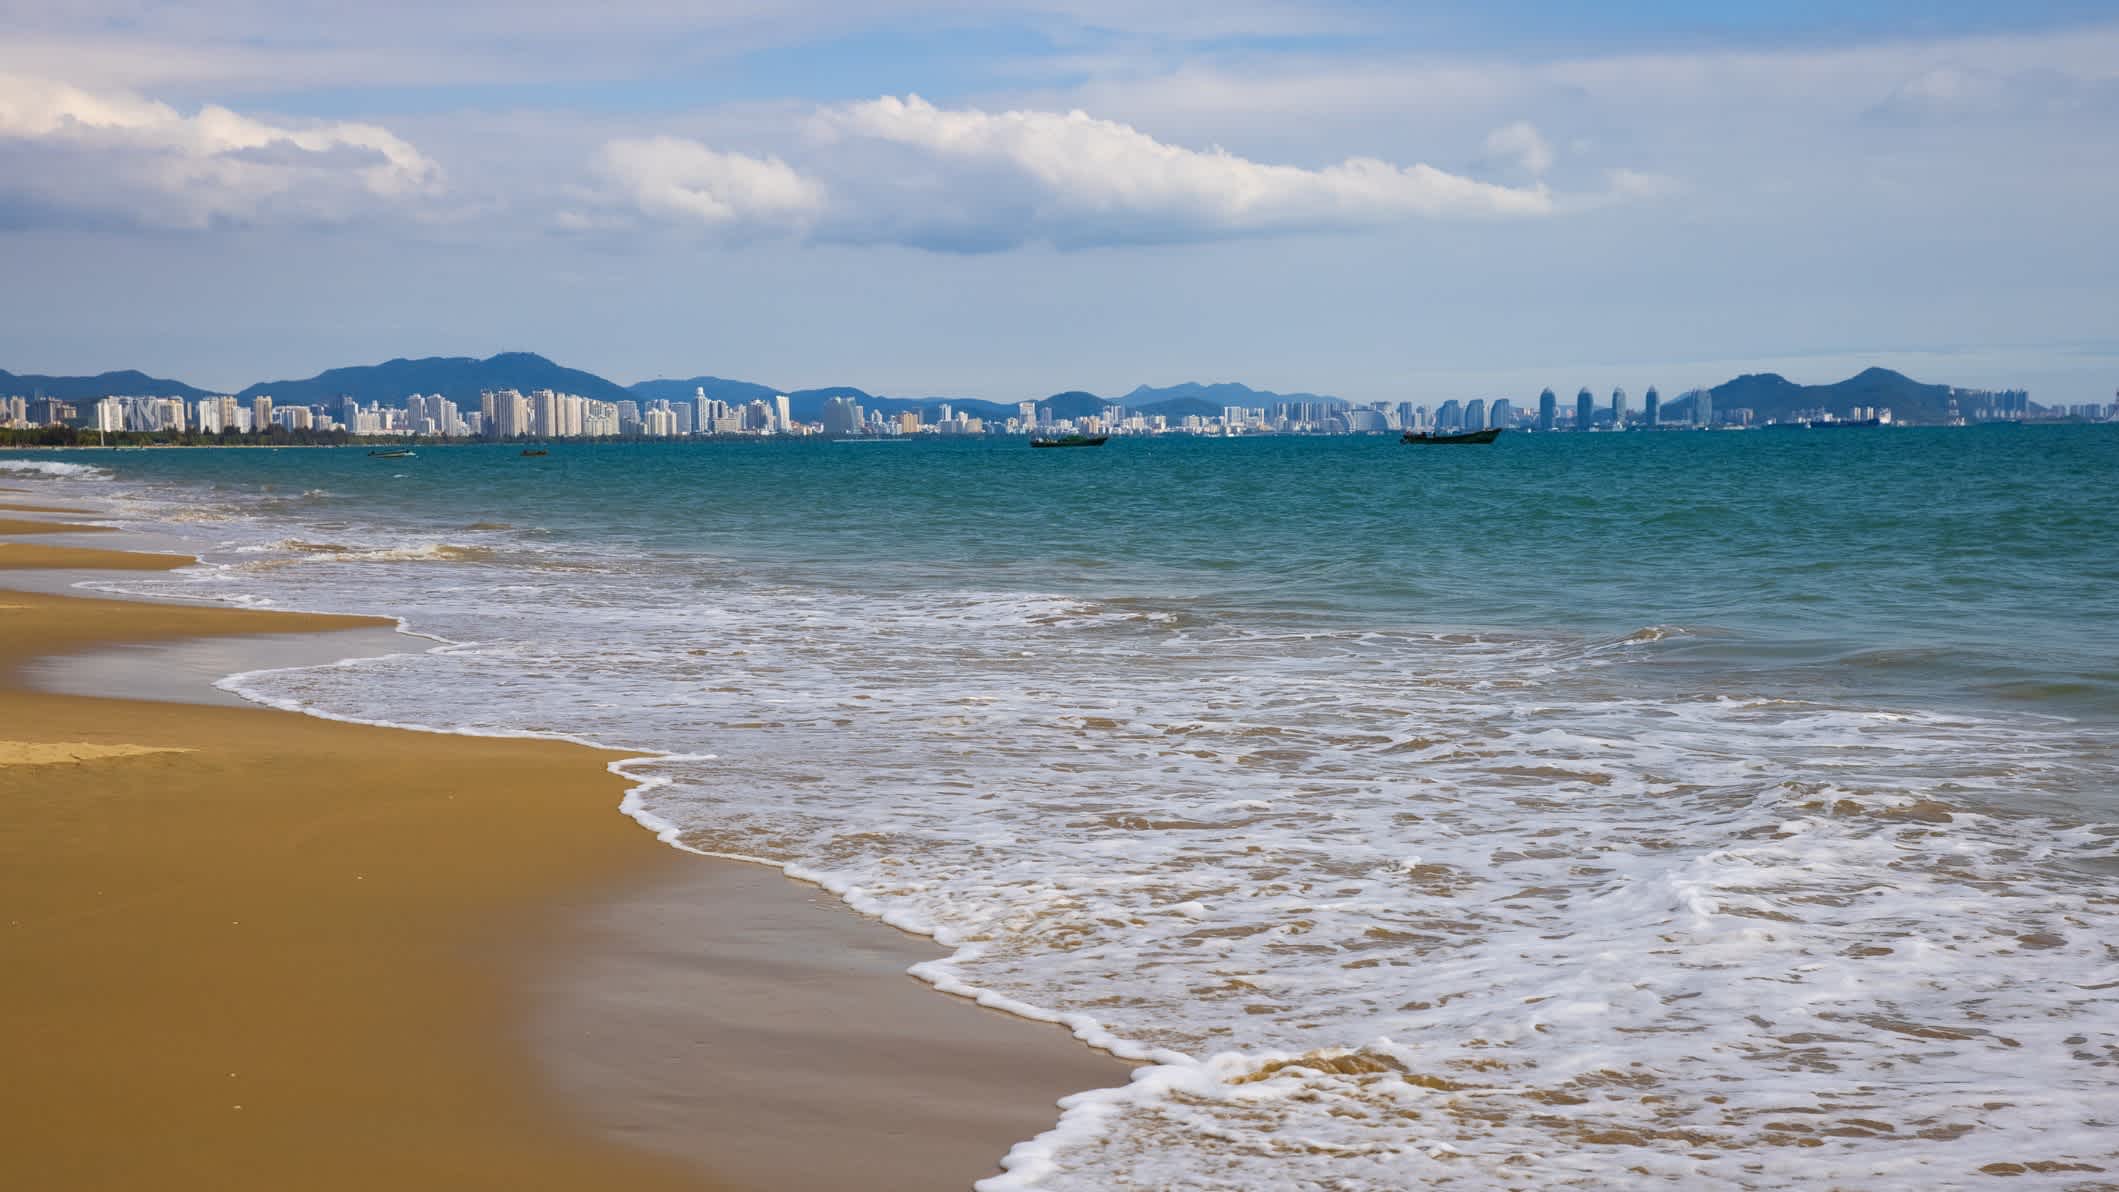 Vue de la mer sur le sable avec la ville de Sanya en arrière-plan à Hainan, en Chine

